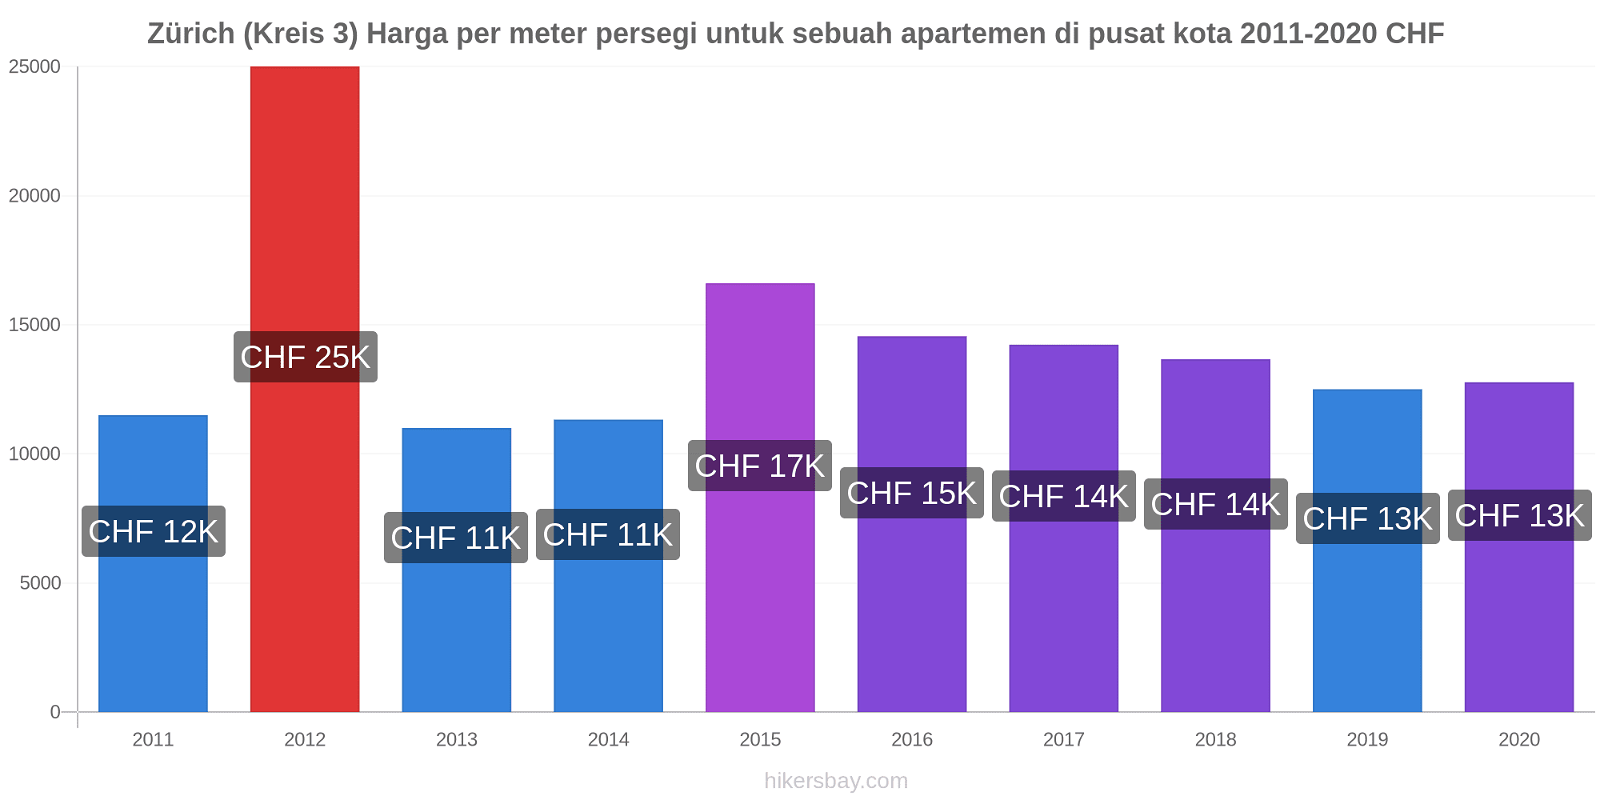 Zürich (Kreis 3) perubahan harga Harga per meter persegi untuk sebuah apartemen di pusat kota hikersbay.com